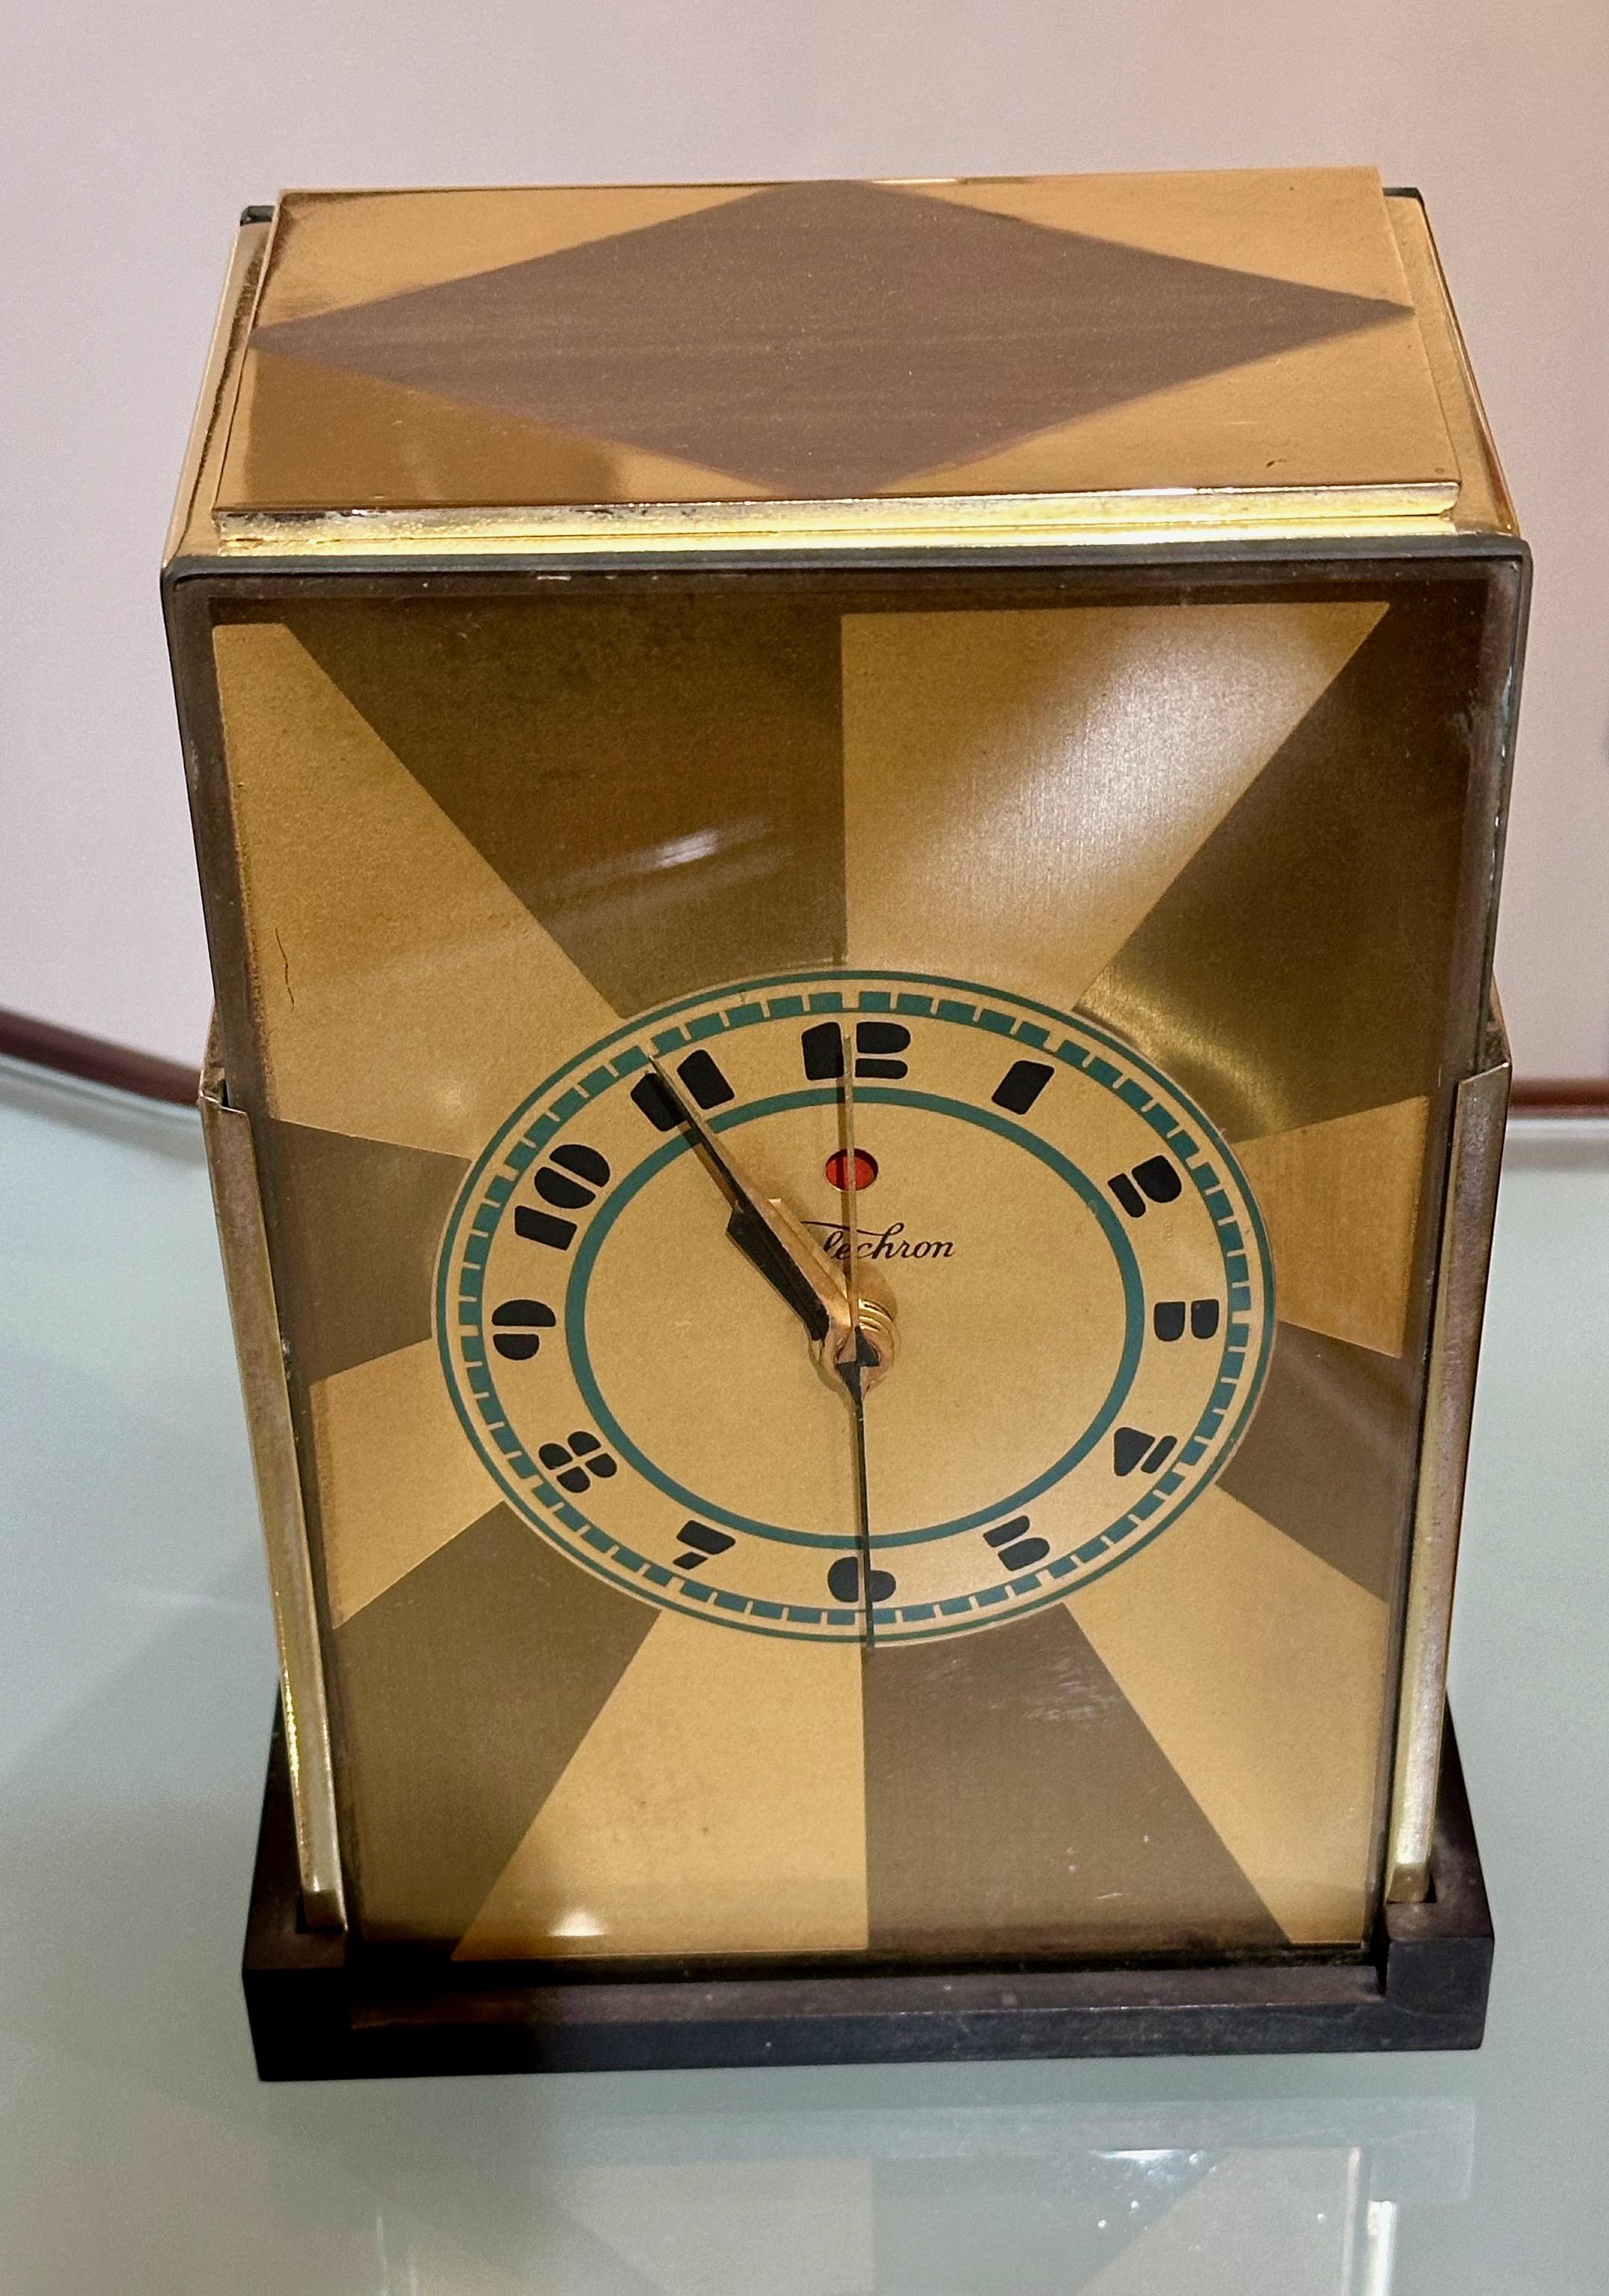 Art Deco Wolkenkratzer Warren Telechron Uhr 431Modernique von Paul Frankl, 1928. Dieses sehr seltene zweifarbige Goldmodell mit Bakelitboden und -rückwand verfügt über ein blaues Zifferblatt mit schwarzem Logo und Zahlen. Dieses Radio wurde erst